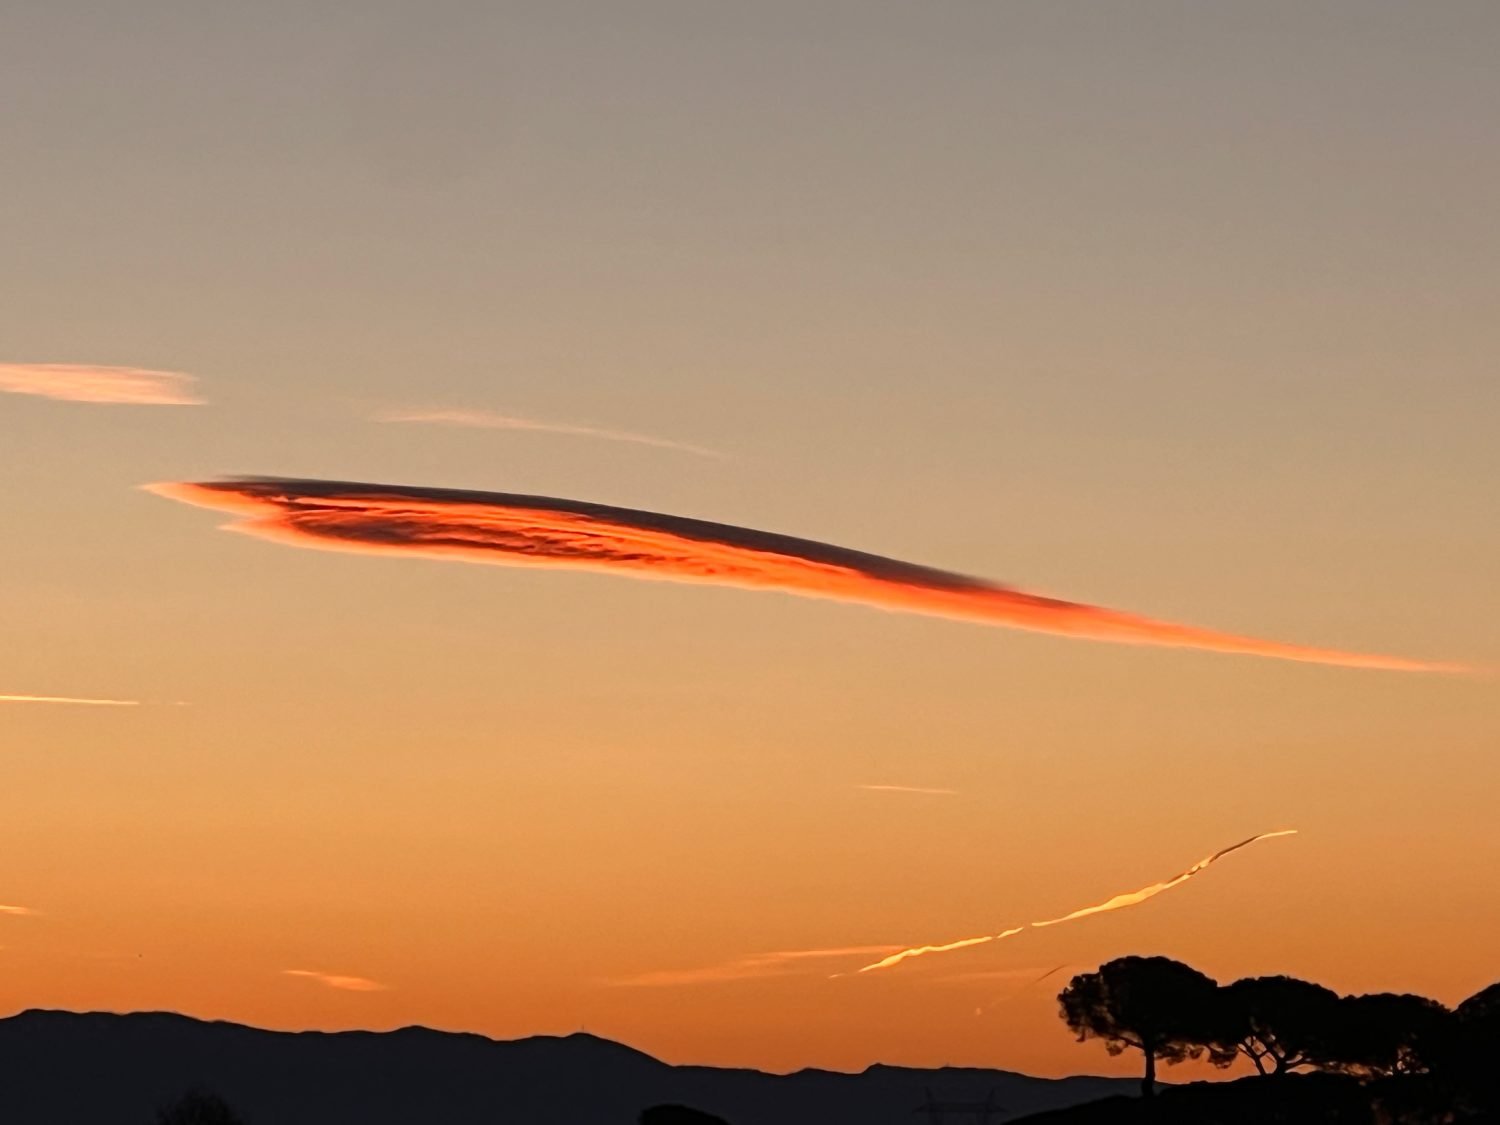 Strange cloud in a form of orange arrow